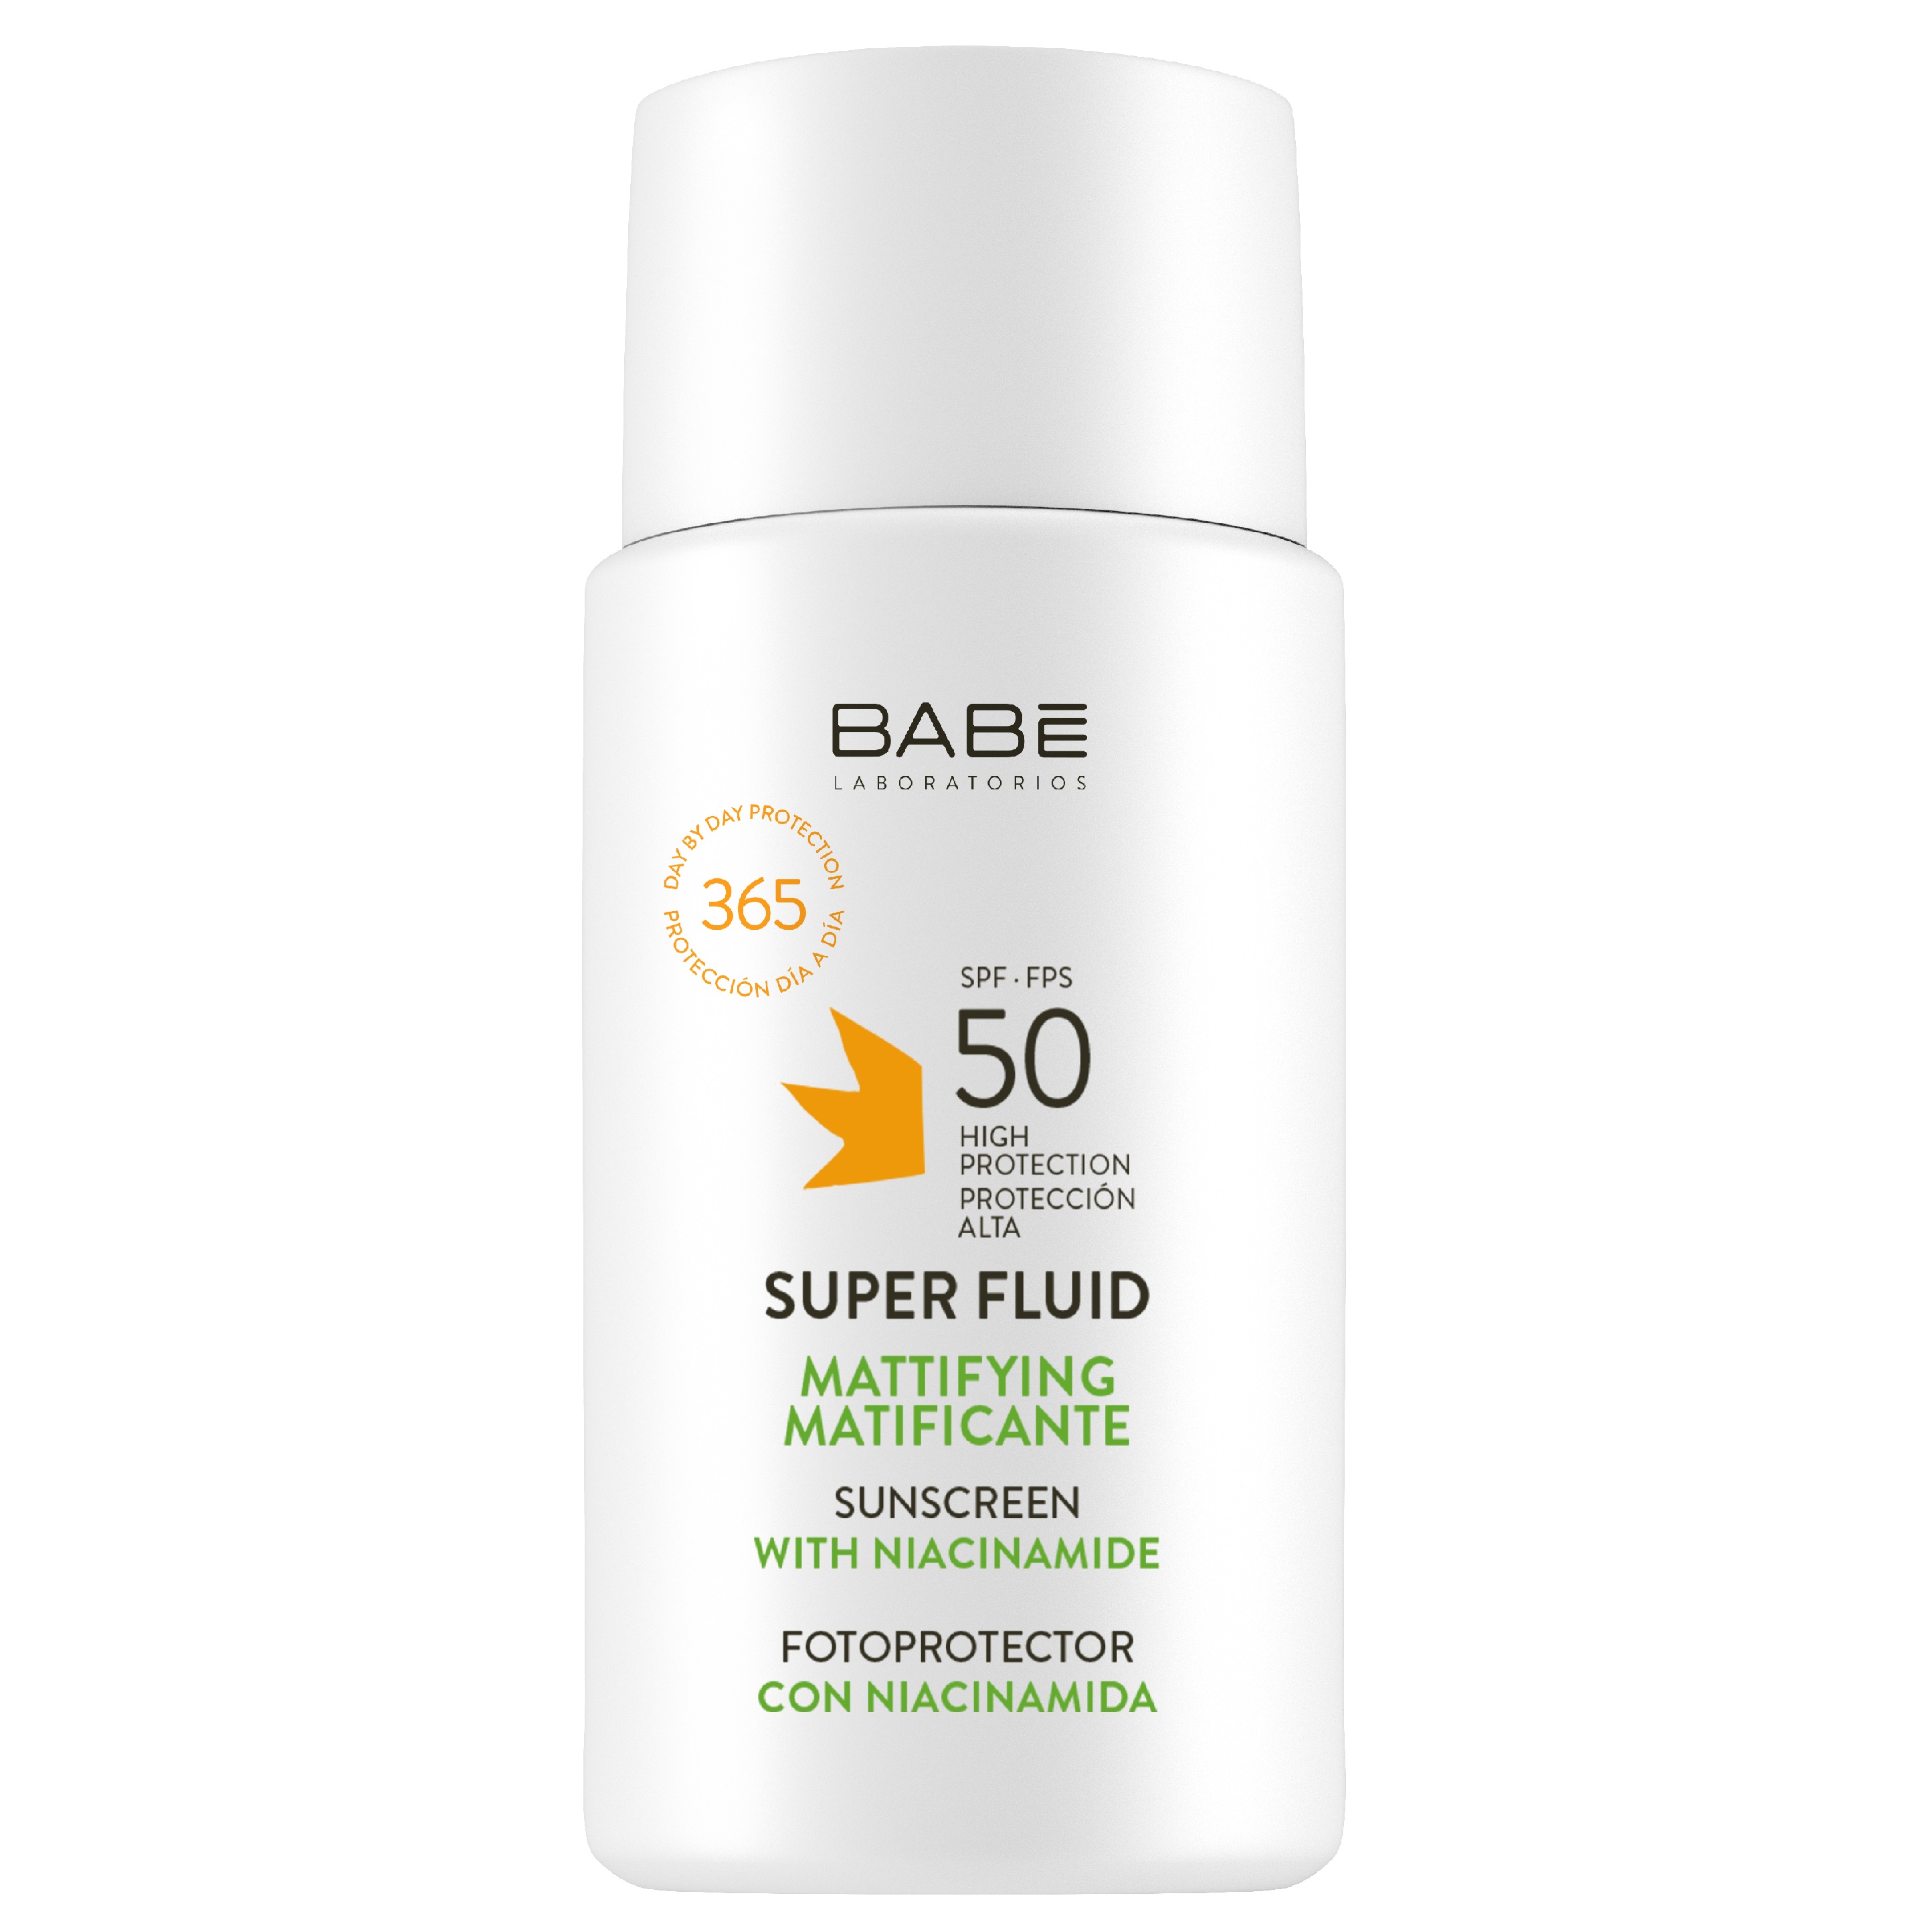 Cонцезахисний супер флюїд Babe Laboratorios Sun Protection SPF 50, для всіх типів шкіри з матуючим ефектом, 50 мл - фото 1